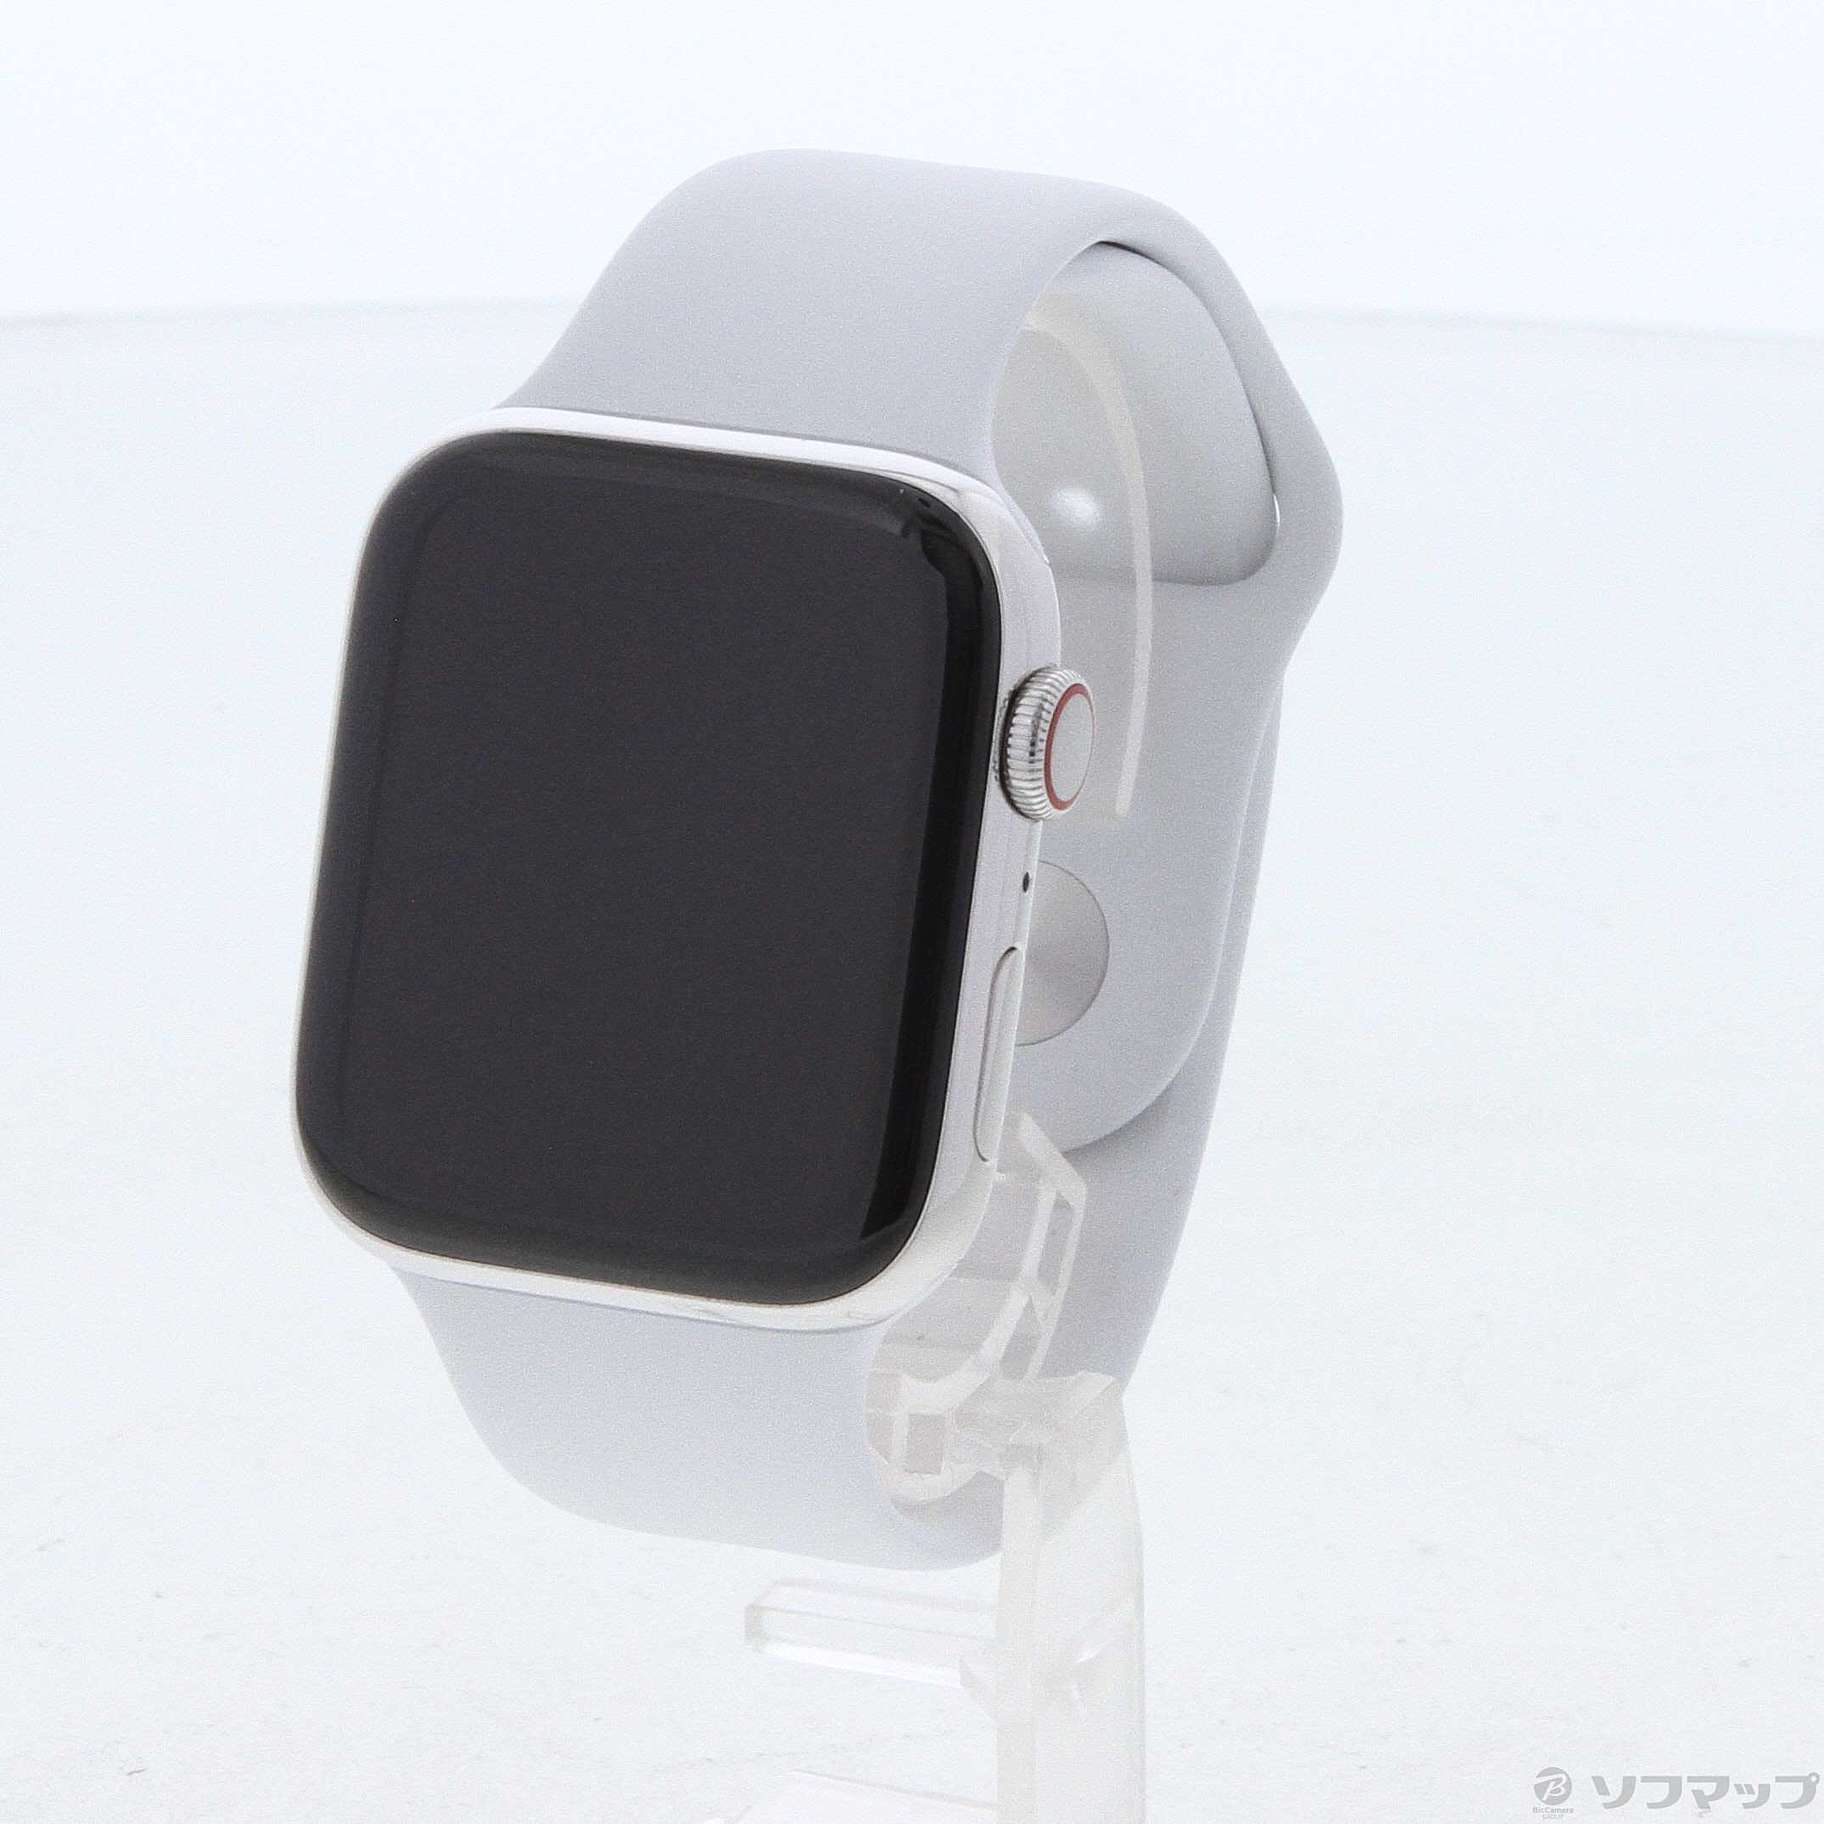 【完全限定】Apple Watch4 gps セルラーモデル Apple Watch本体